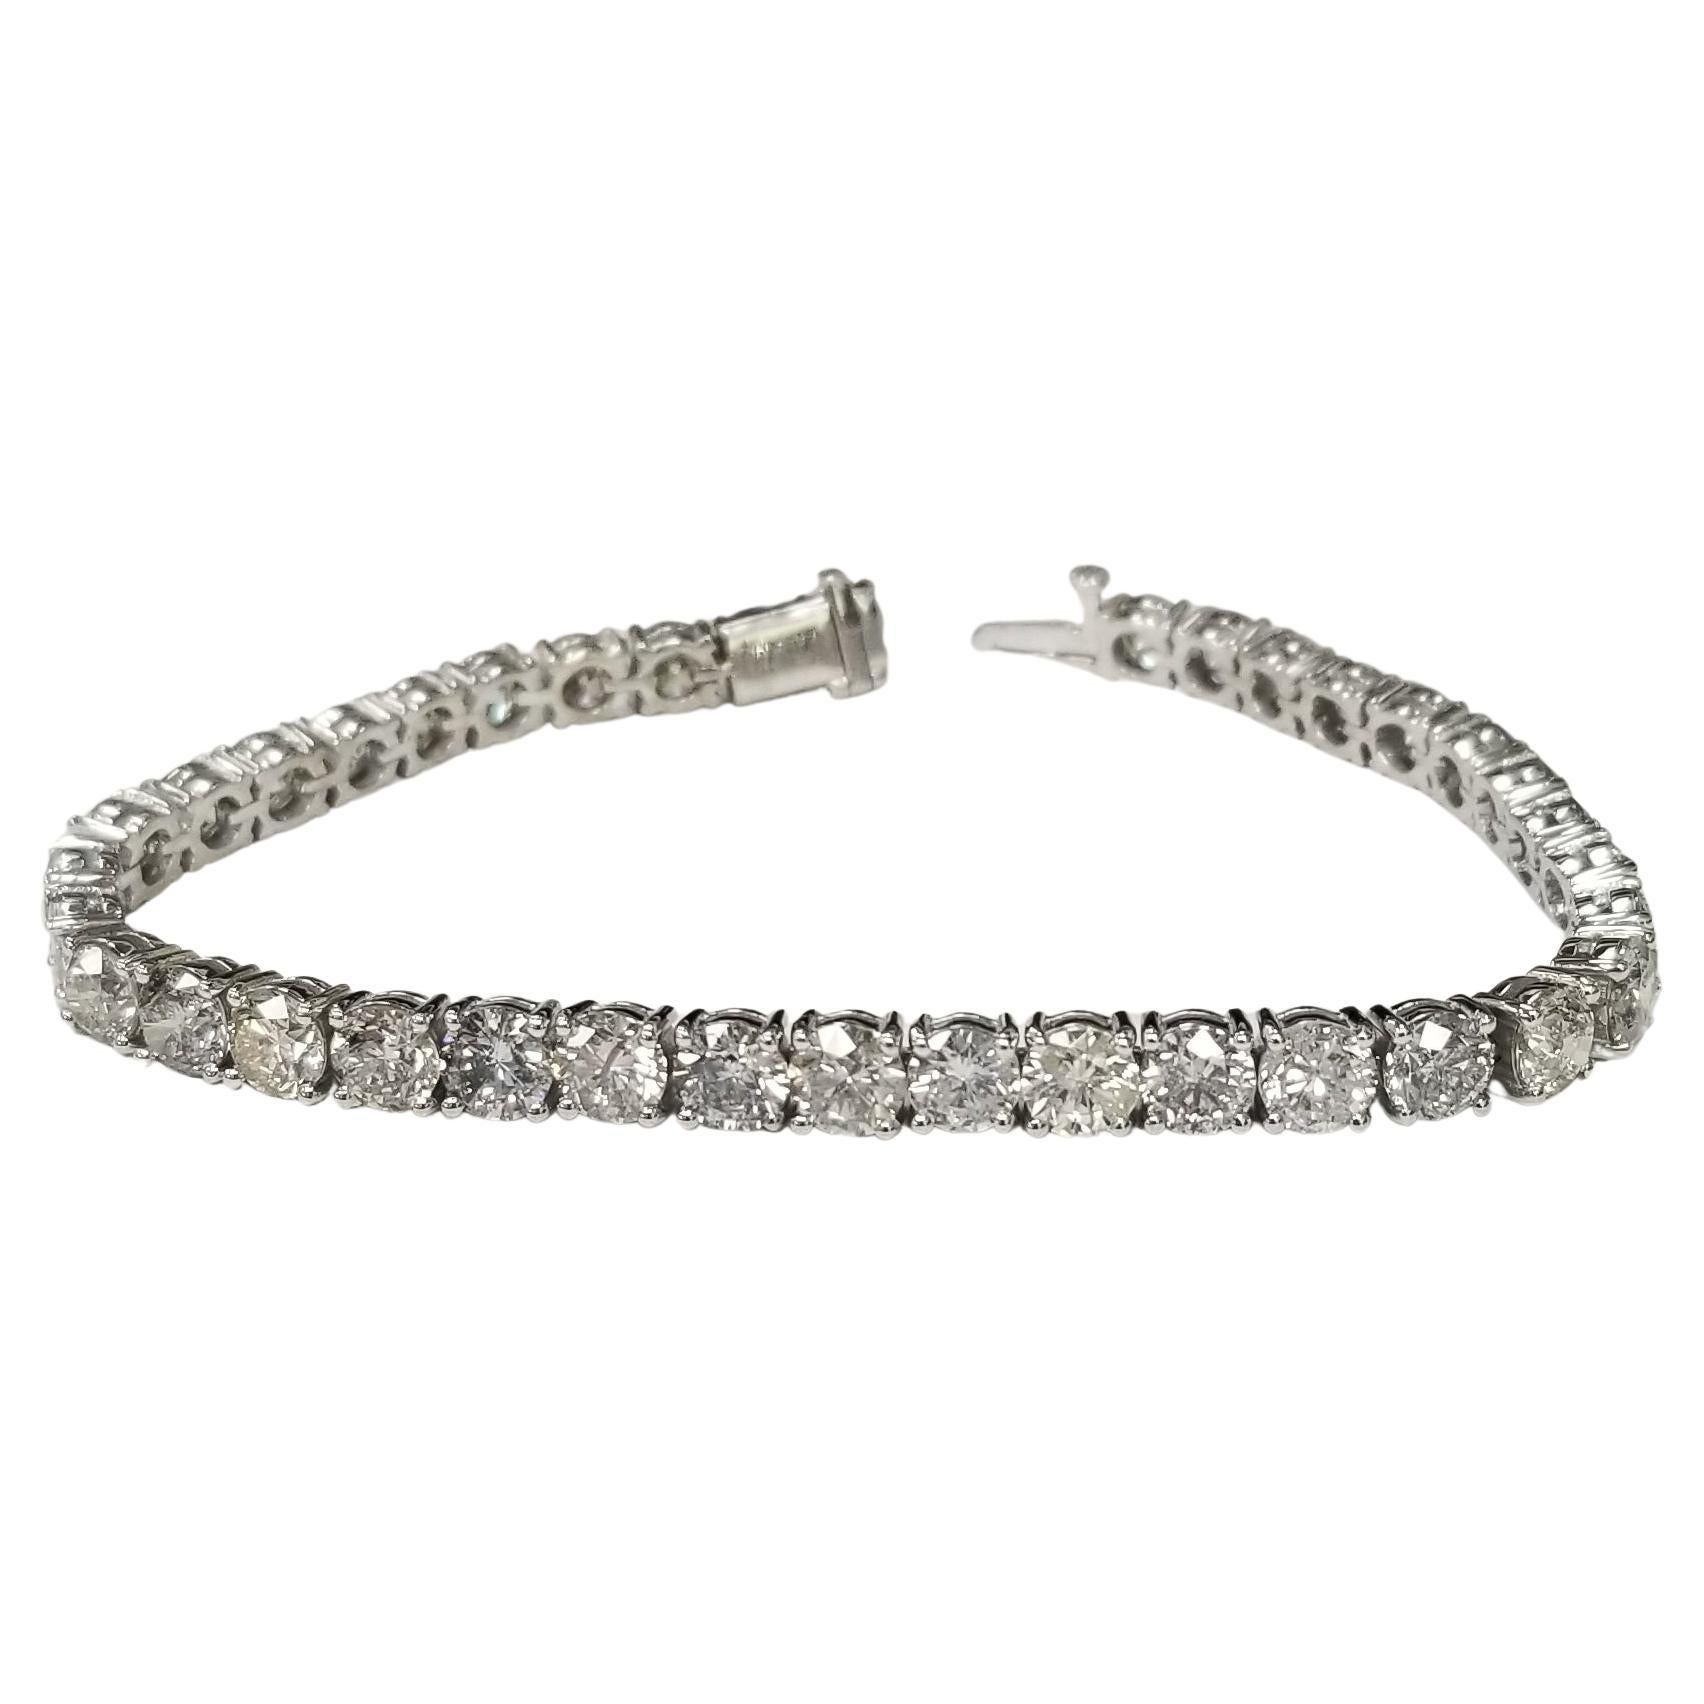 Bracelet tennis en diamants de 15,03 carats sertis dans une monture en or blanc 14 carats